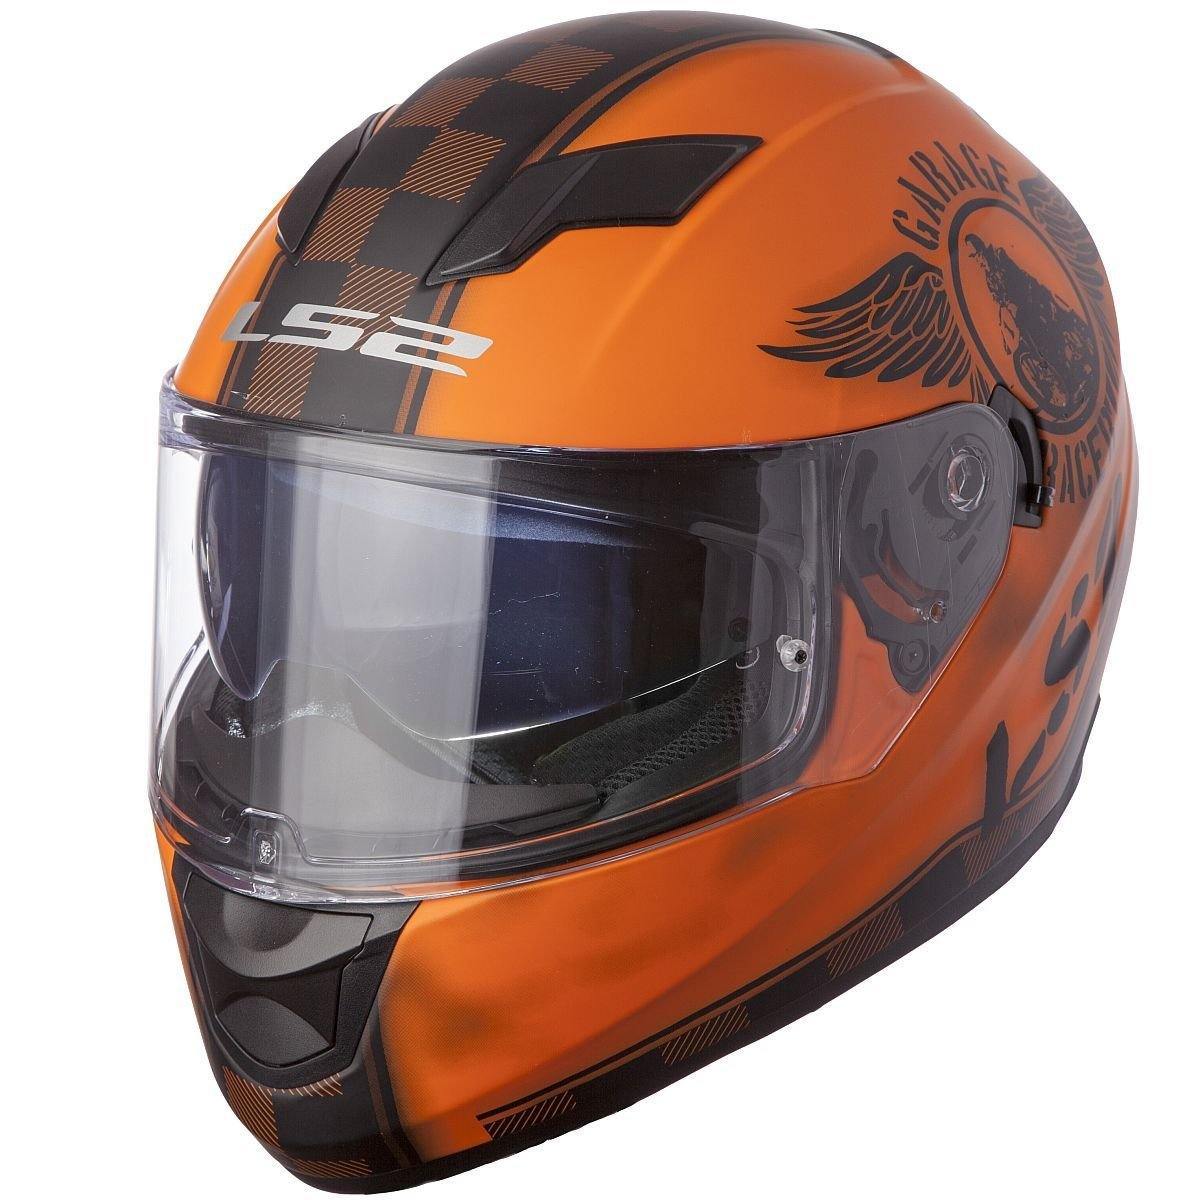 7 Best Motorcycle Helmet Brands | The Moto Expert